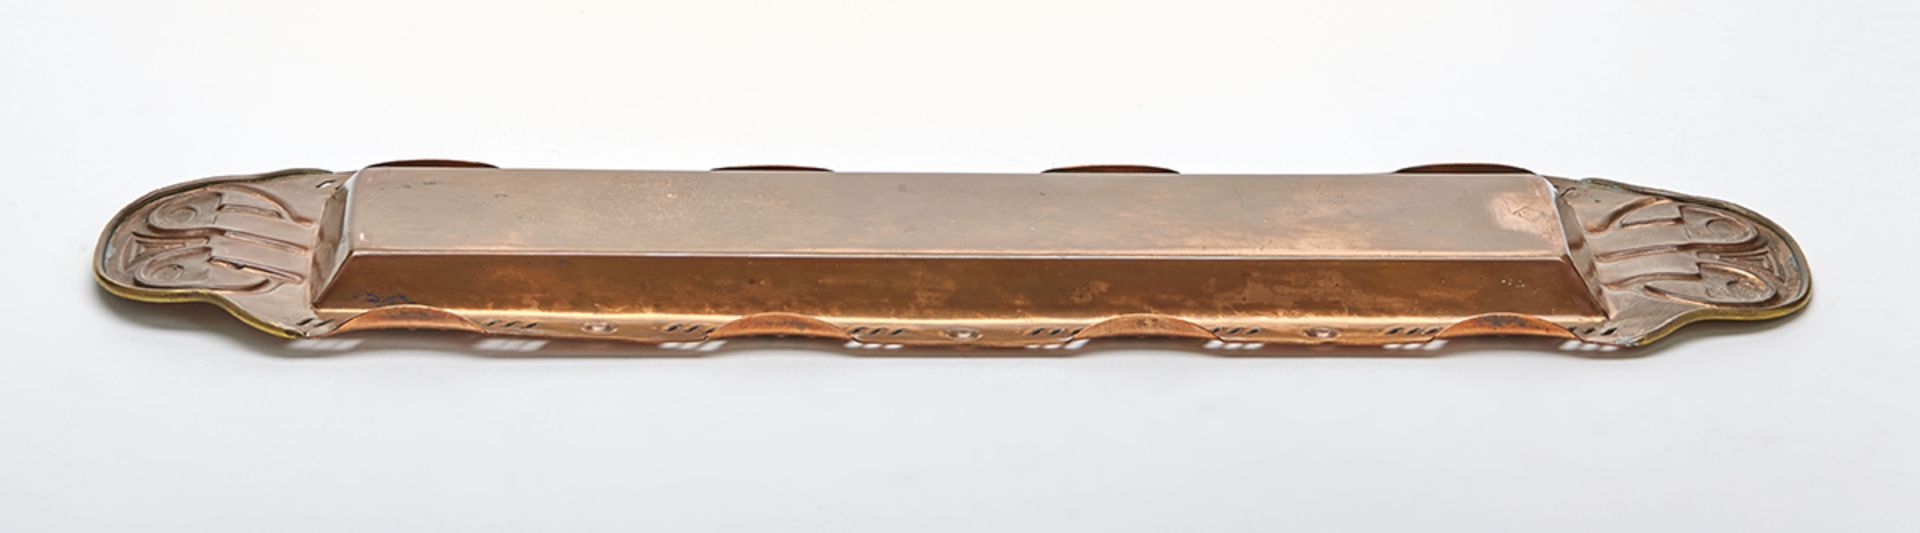 Stylish Jugendstil Gebruder Bing Copper & Brass Tray C.1900 - Image 5 of 8